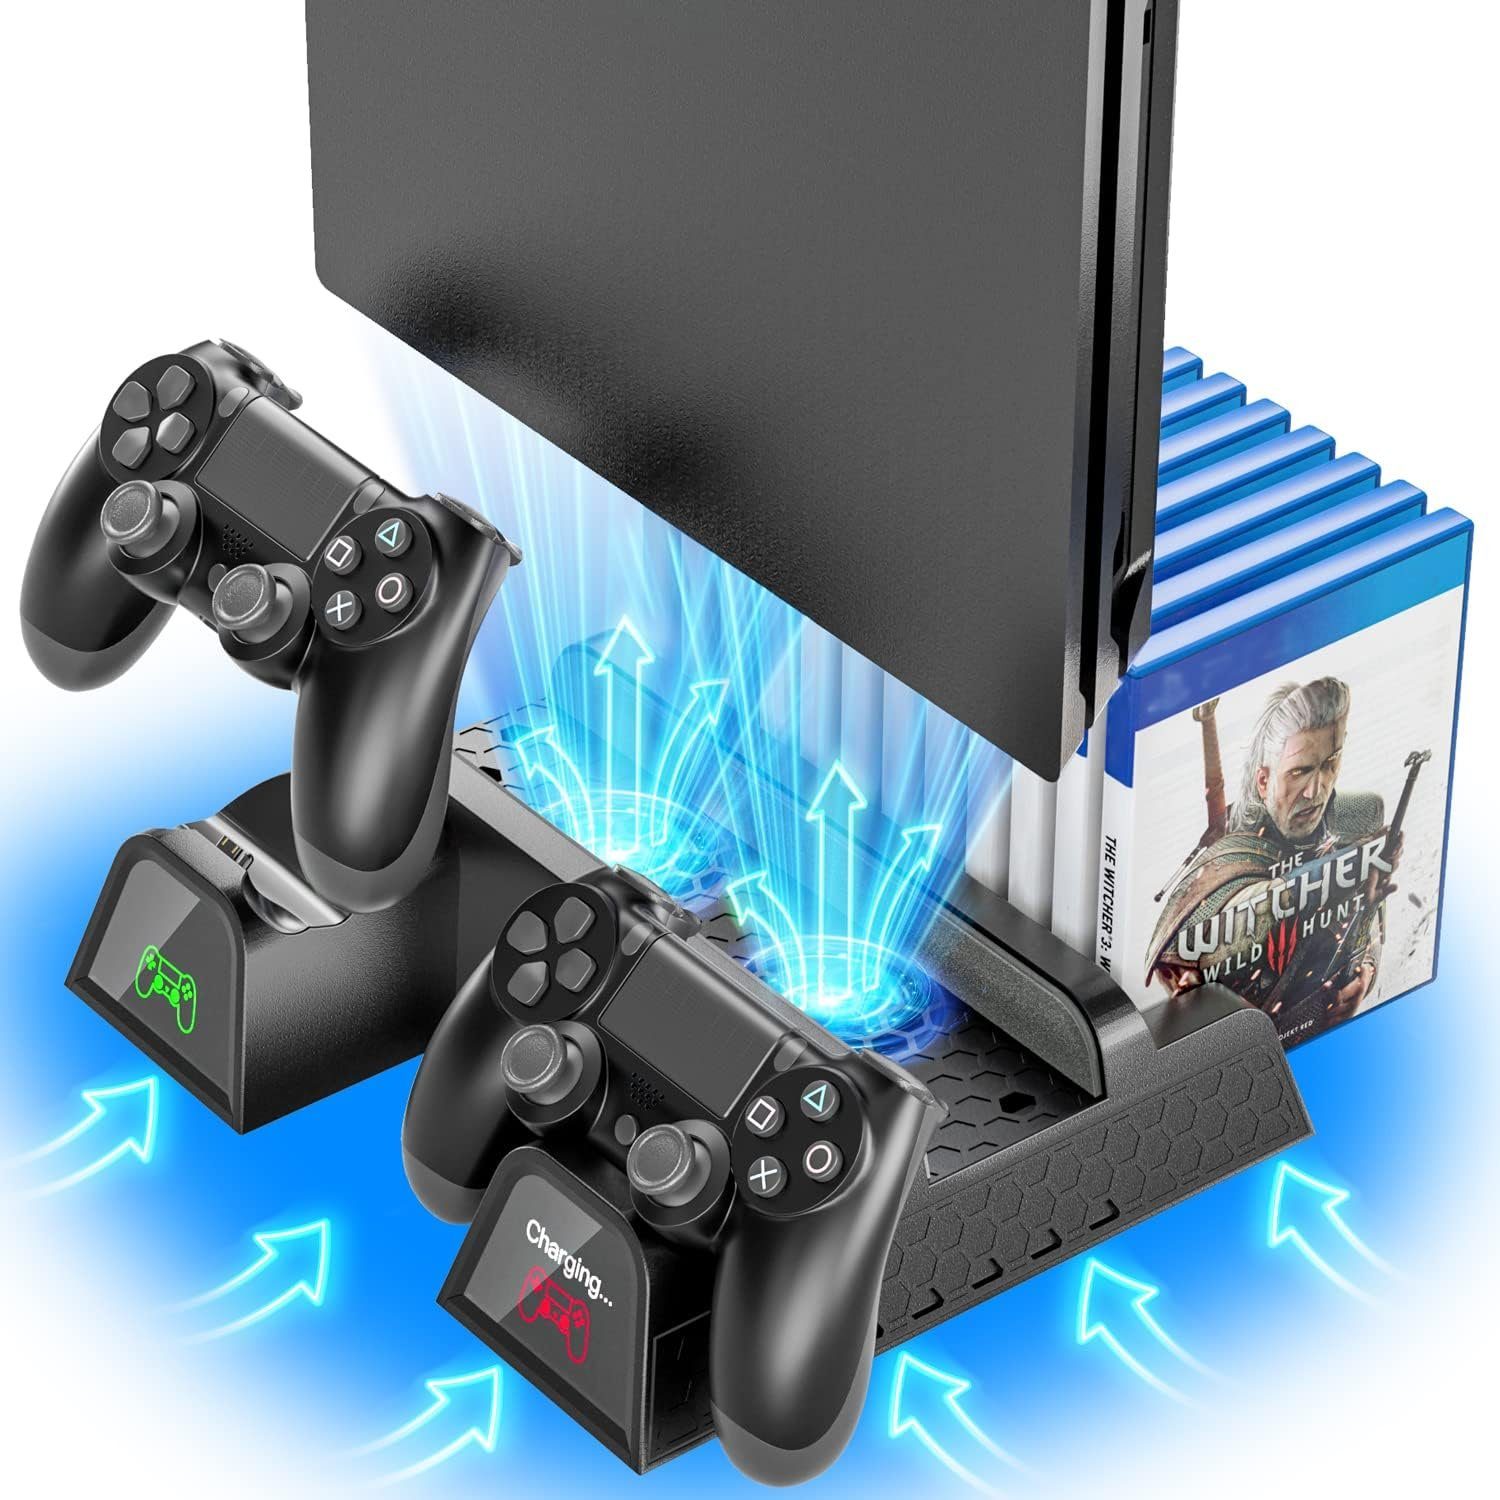 HYTIREBY PS4 Standfuß, Kühler mit Controller Ladestation für PS4/PS4 Pro/Slim Konsolen-Standfuß, (Playstation 4/PS4 Pro/Slim, PS4, PS4 Halterung, Ständer, Lüfter mit 12 Spiele Lagerung)